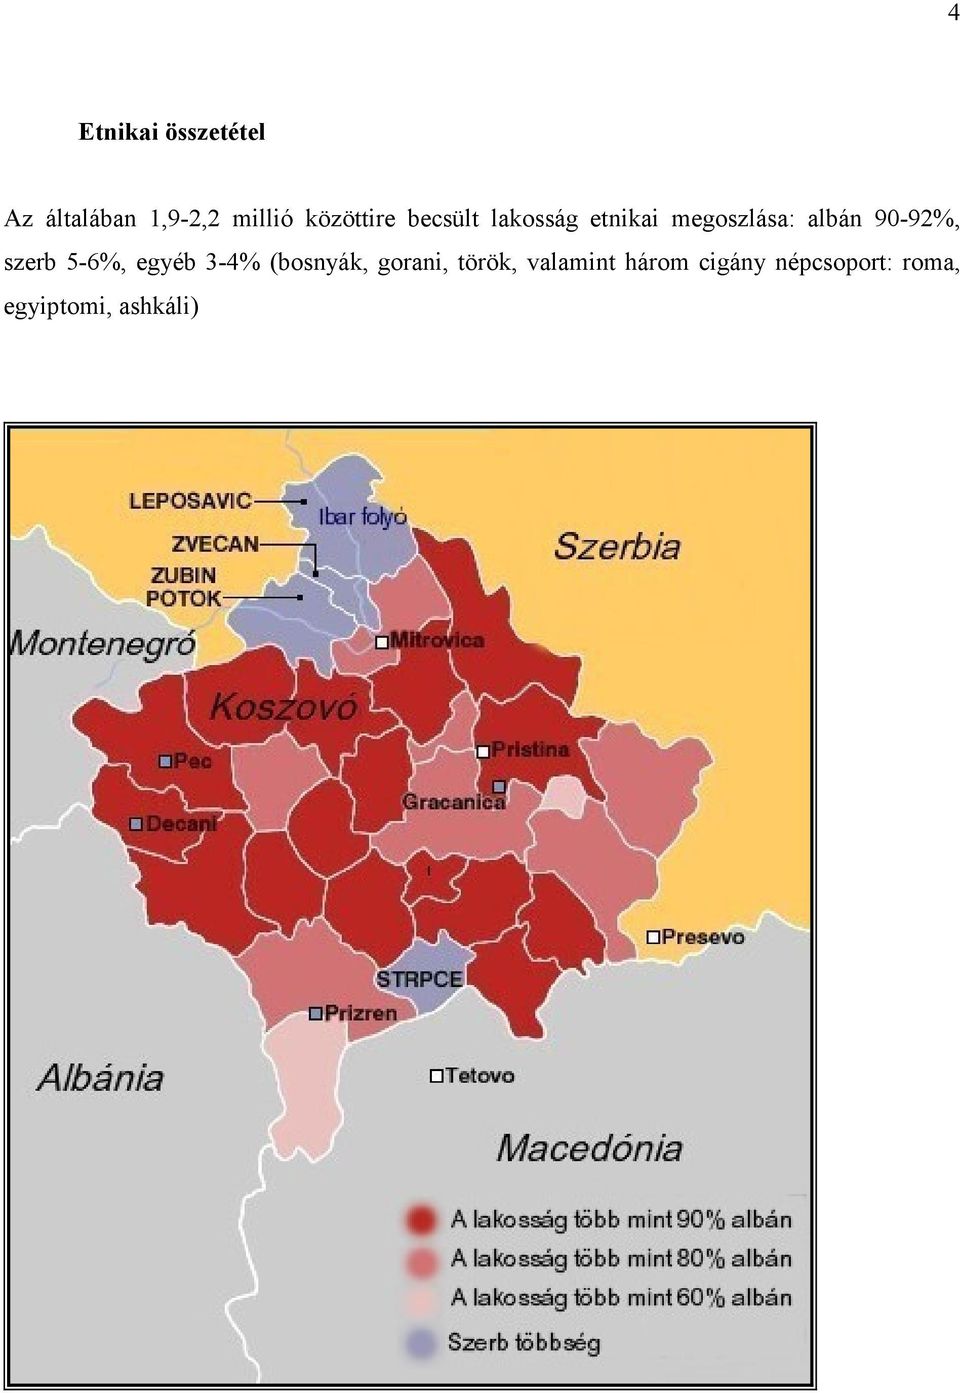 90-92%, szerb 5-6%, egyéb 3-4% (bosnyák, gorani,